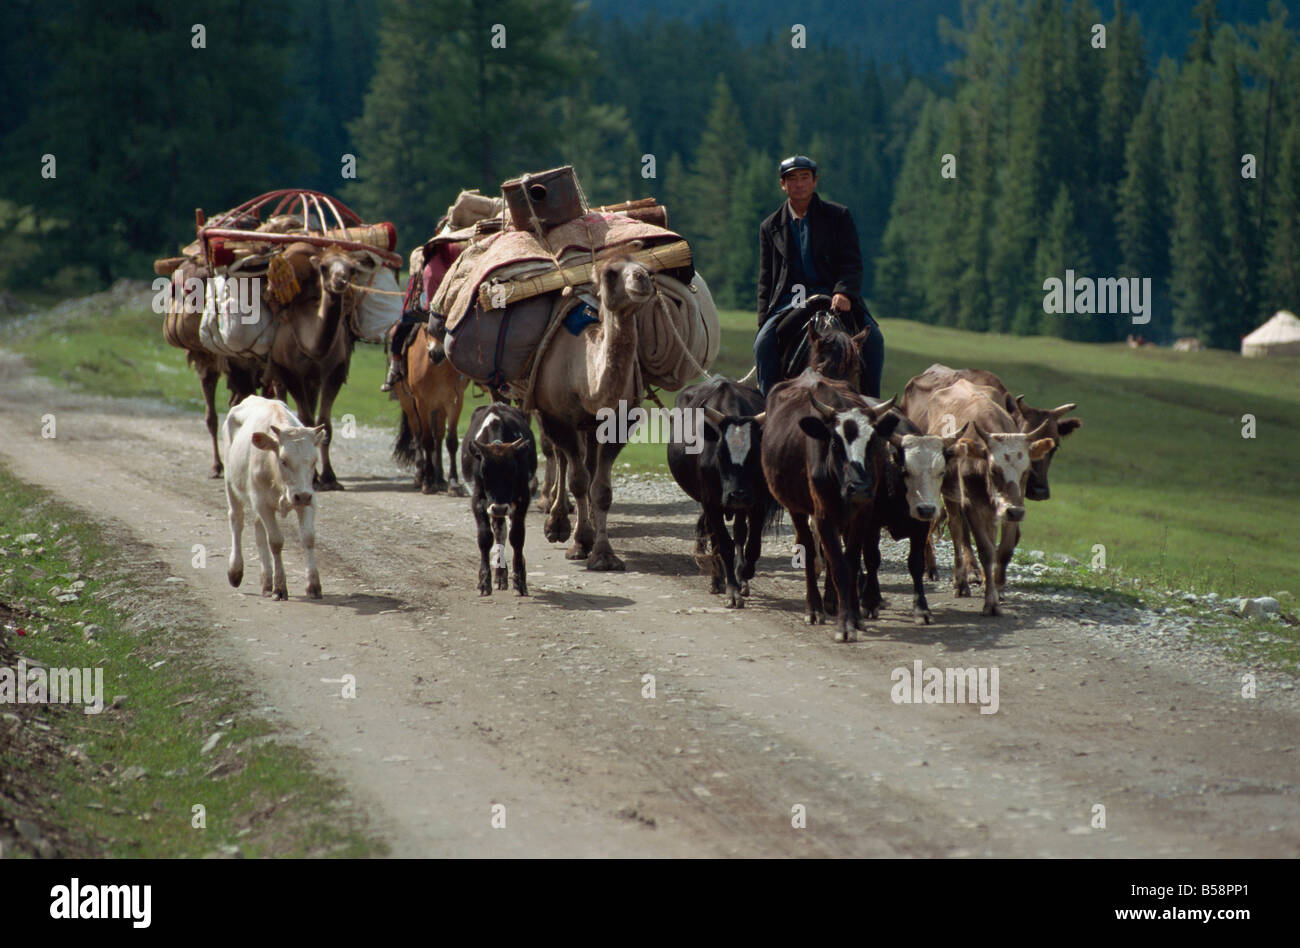 Migration estivale des montagnes de l'Altaï kazakhs du Xinjiang Chine Asie du Nord-Est Banque D'Images